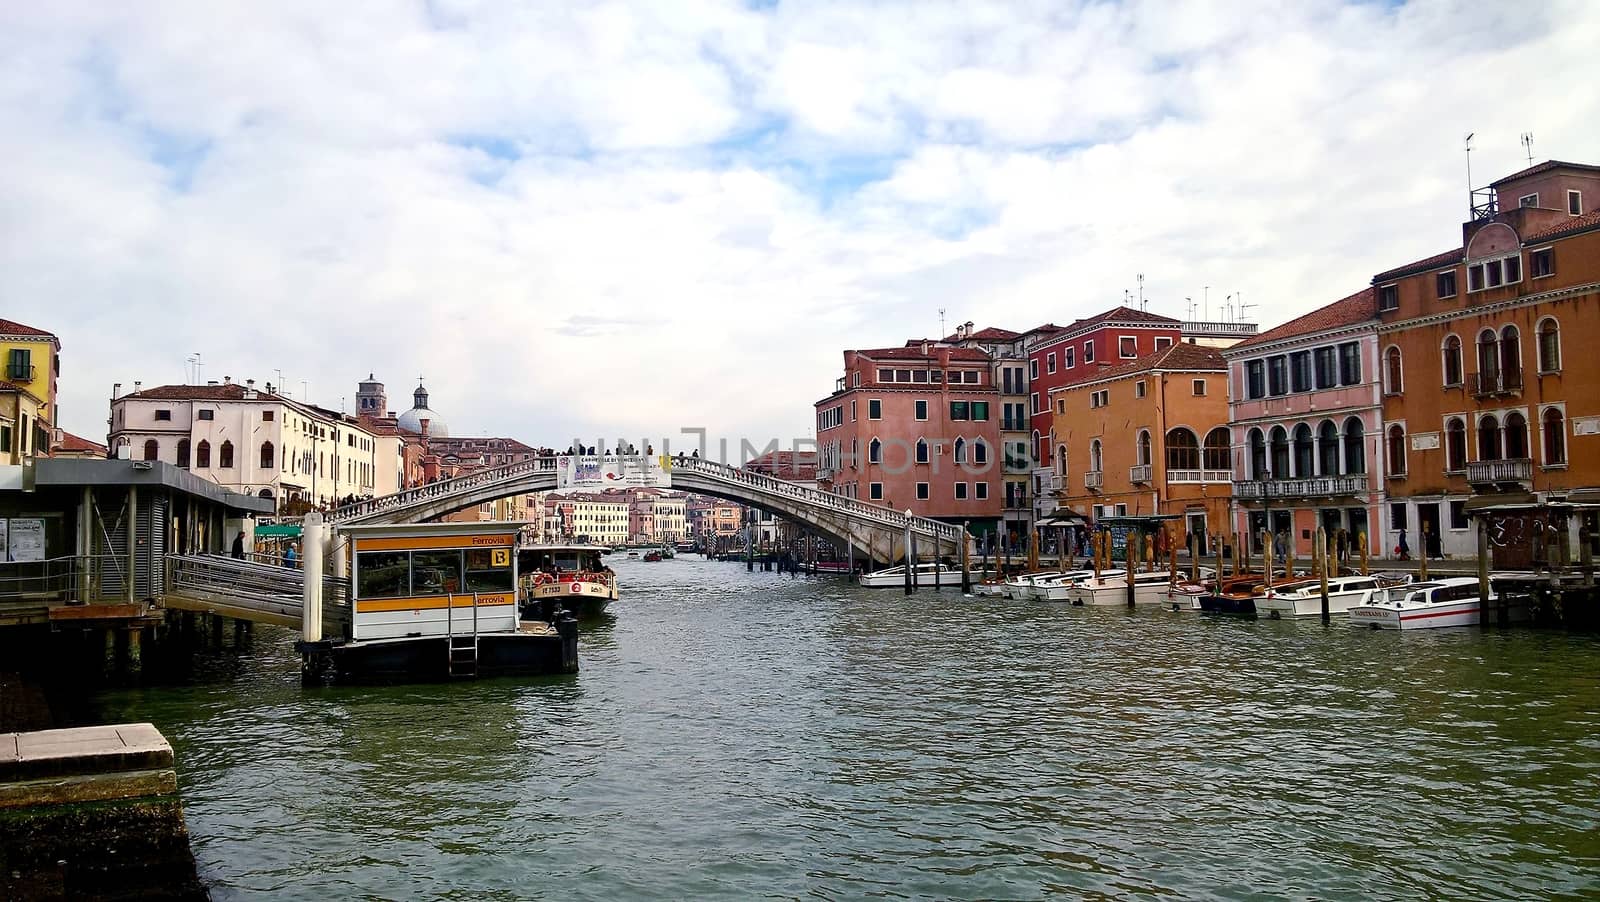 Venice, Italy by yohananegusse